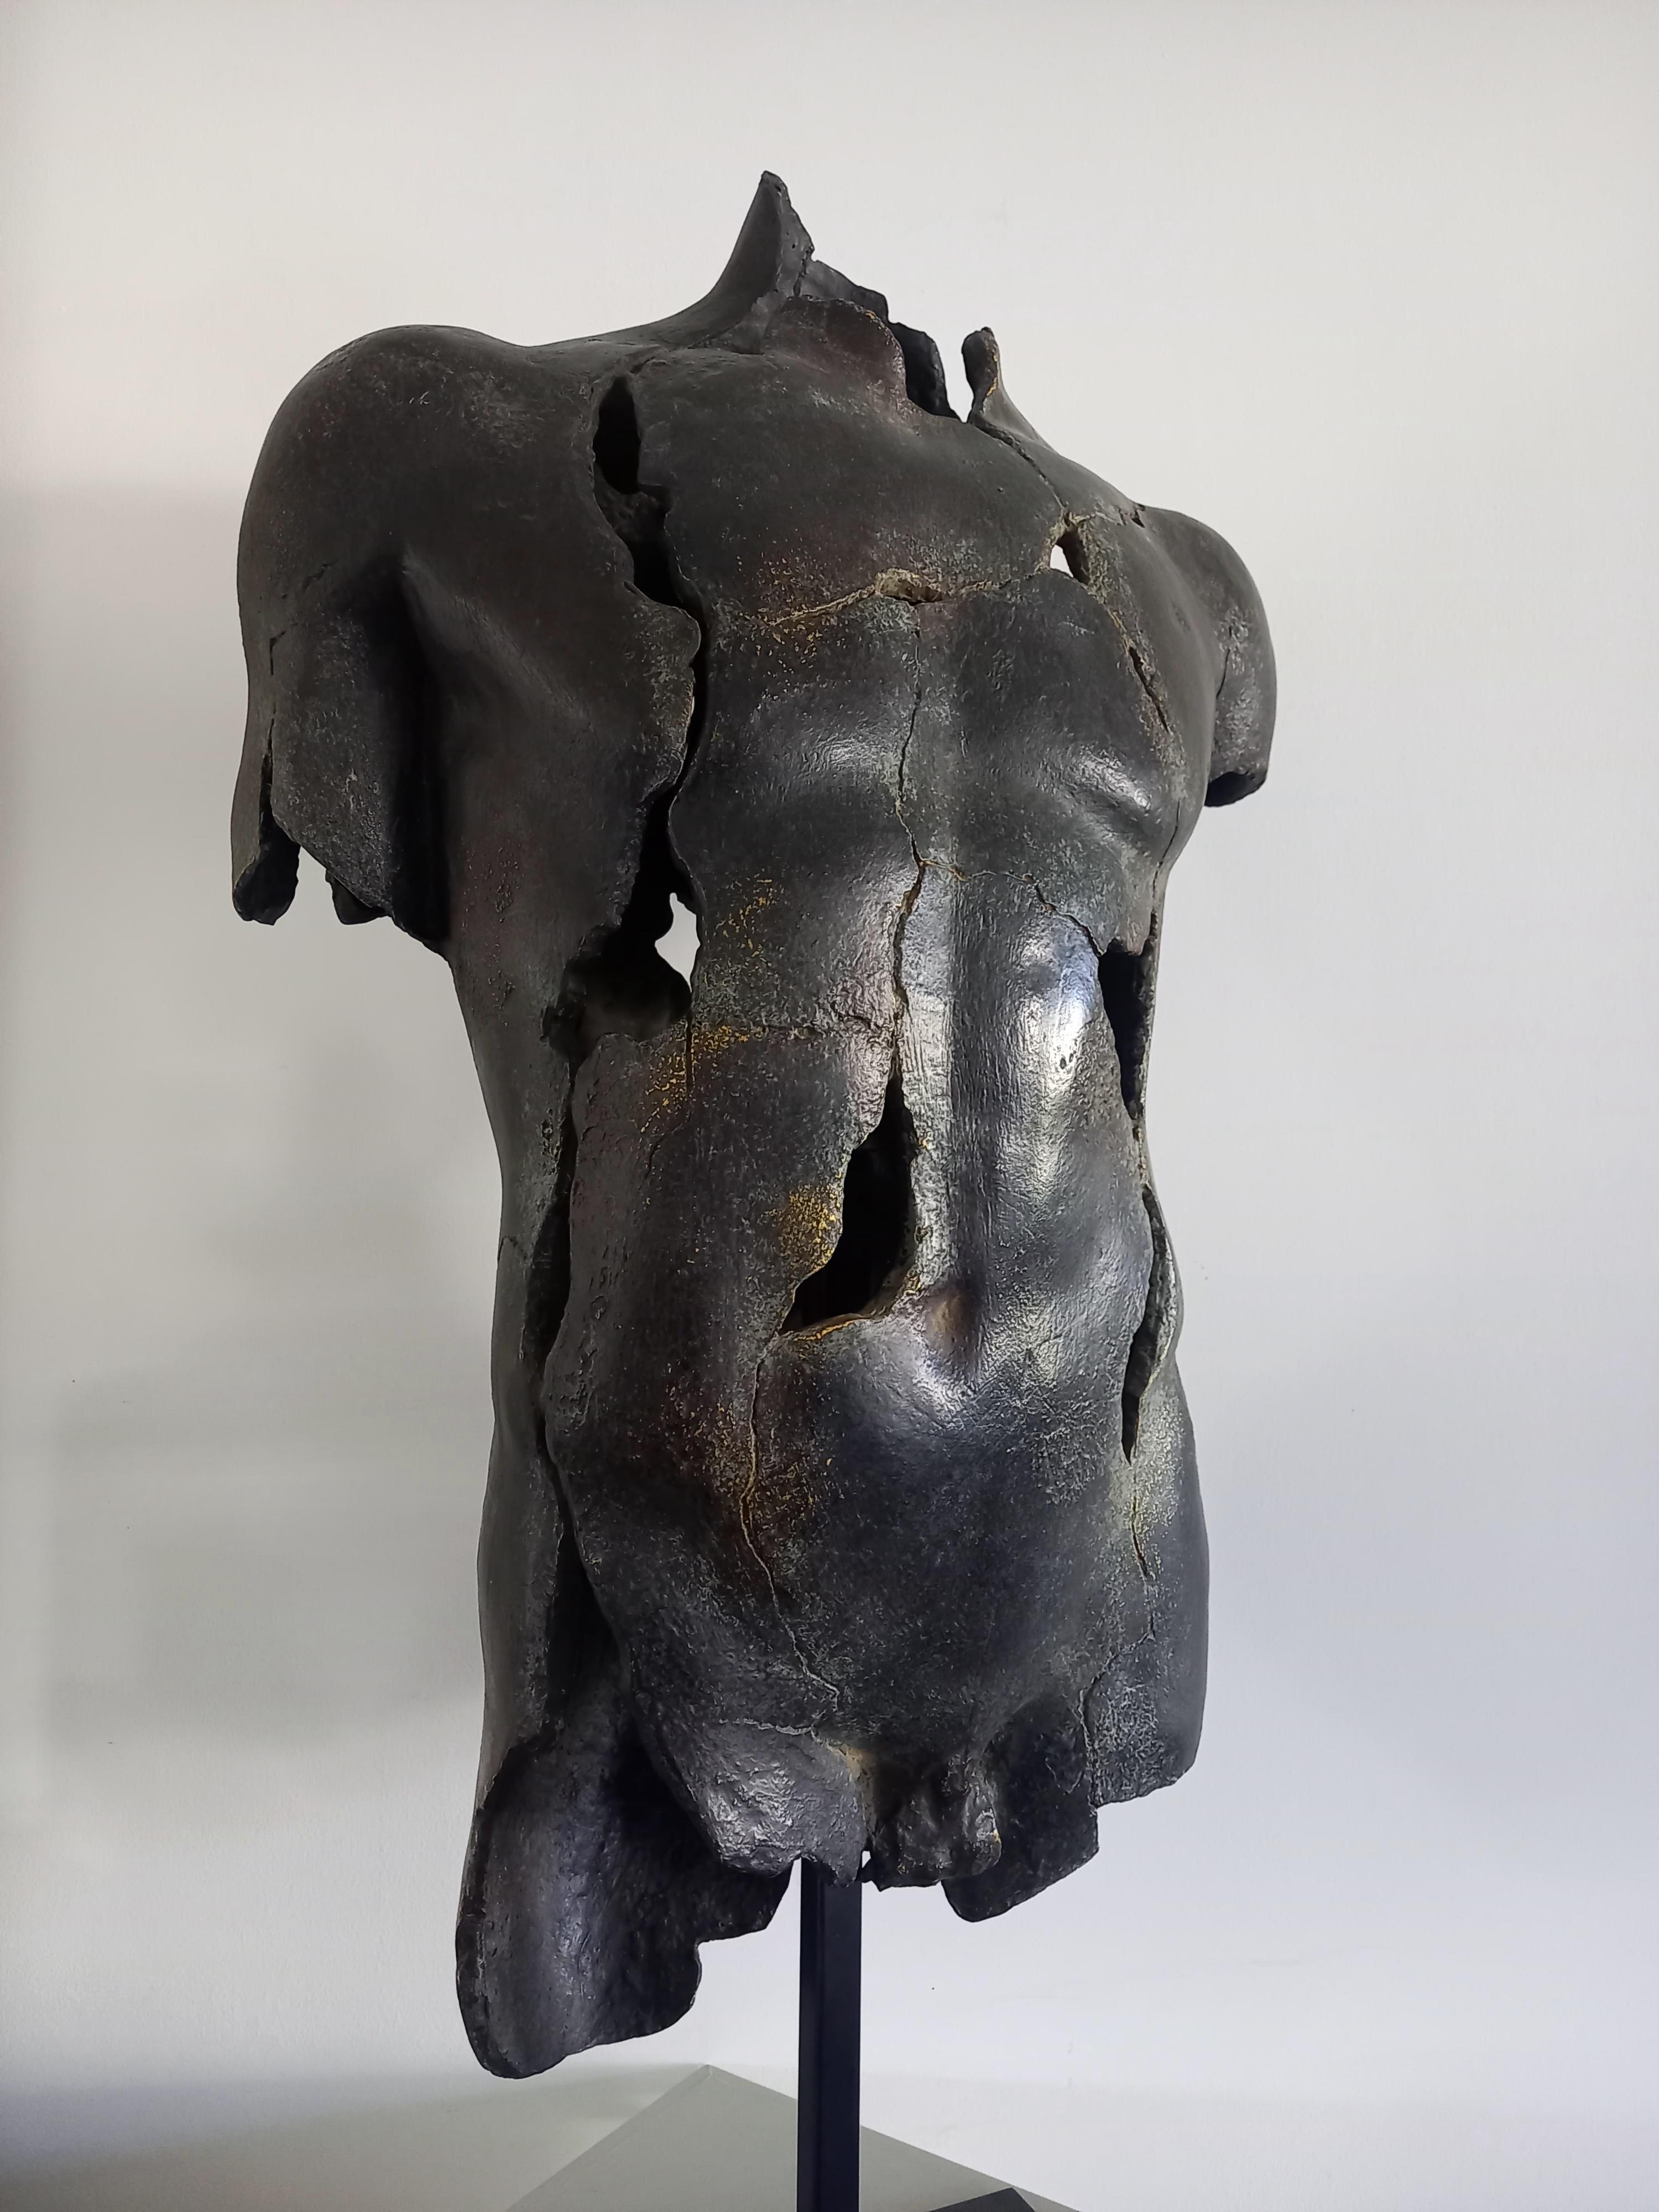 Skulptur Statue Büste Mann Bronze Patina. 
Dieses Stück, das sowohl in klassischen als auch in zeitgenössischen Innenräumen eine hervorragende Wirkung hat, wird niemanden gleichgültig lassen. 
Sein klassischer, von den griechischen Göttern